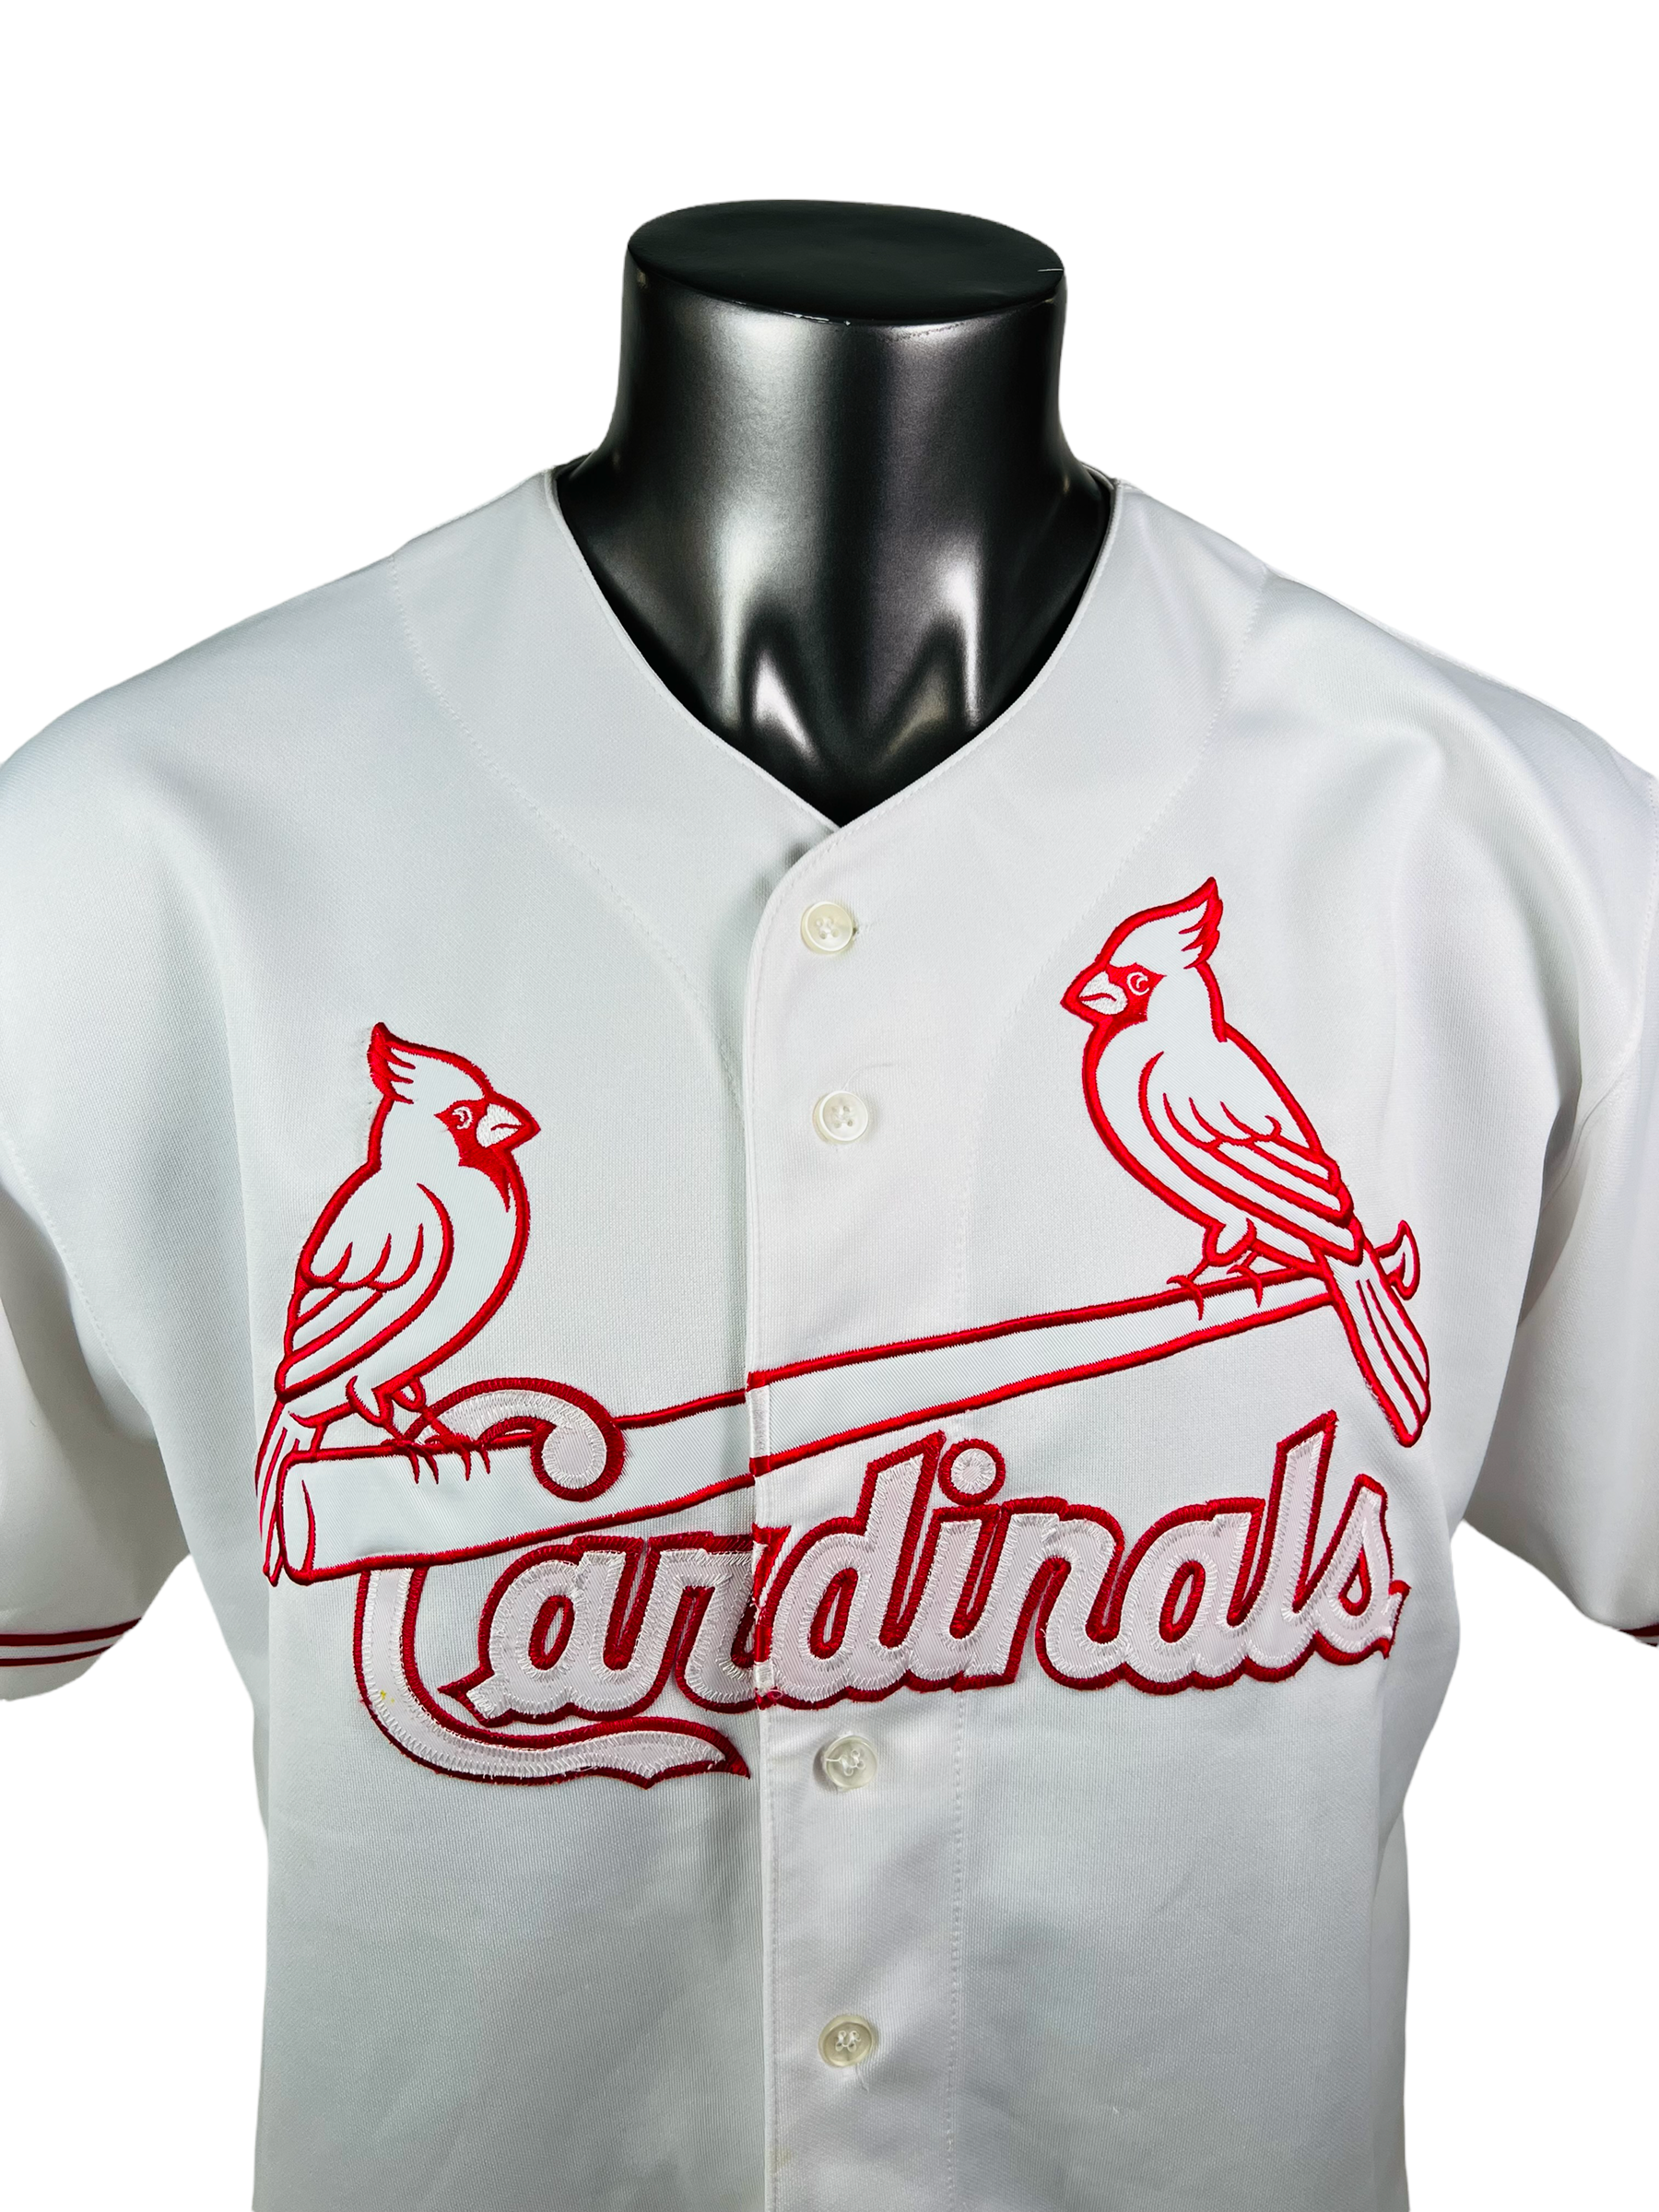 St. Louis Cardinals Throwback Jerseys, Cardinals Retro & Vintage